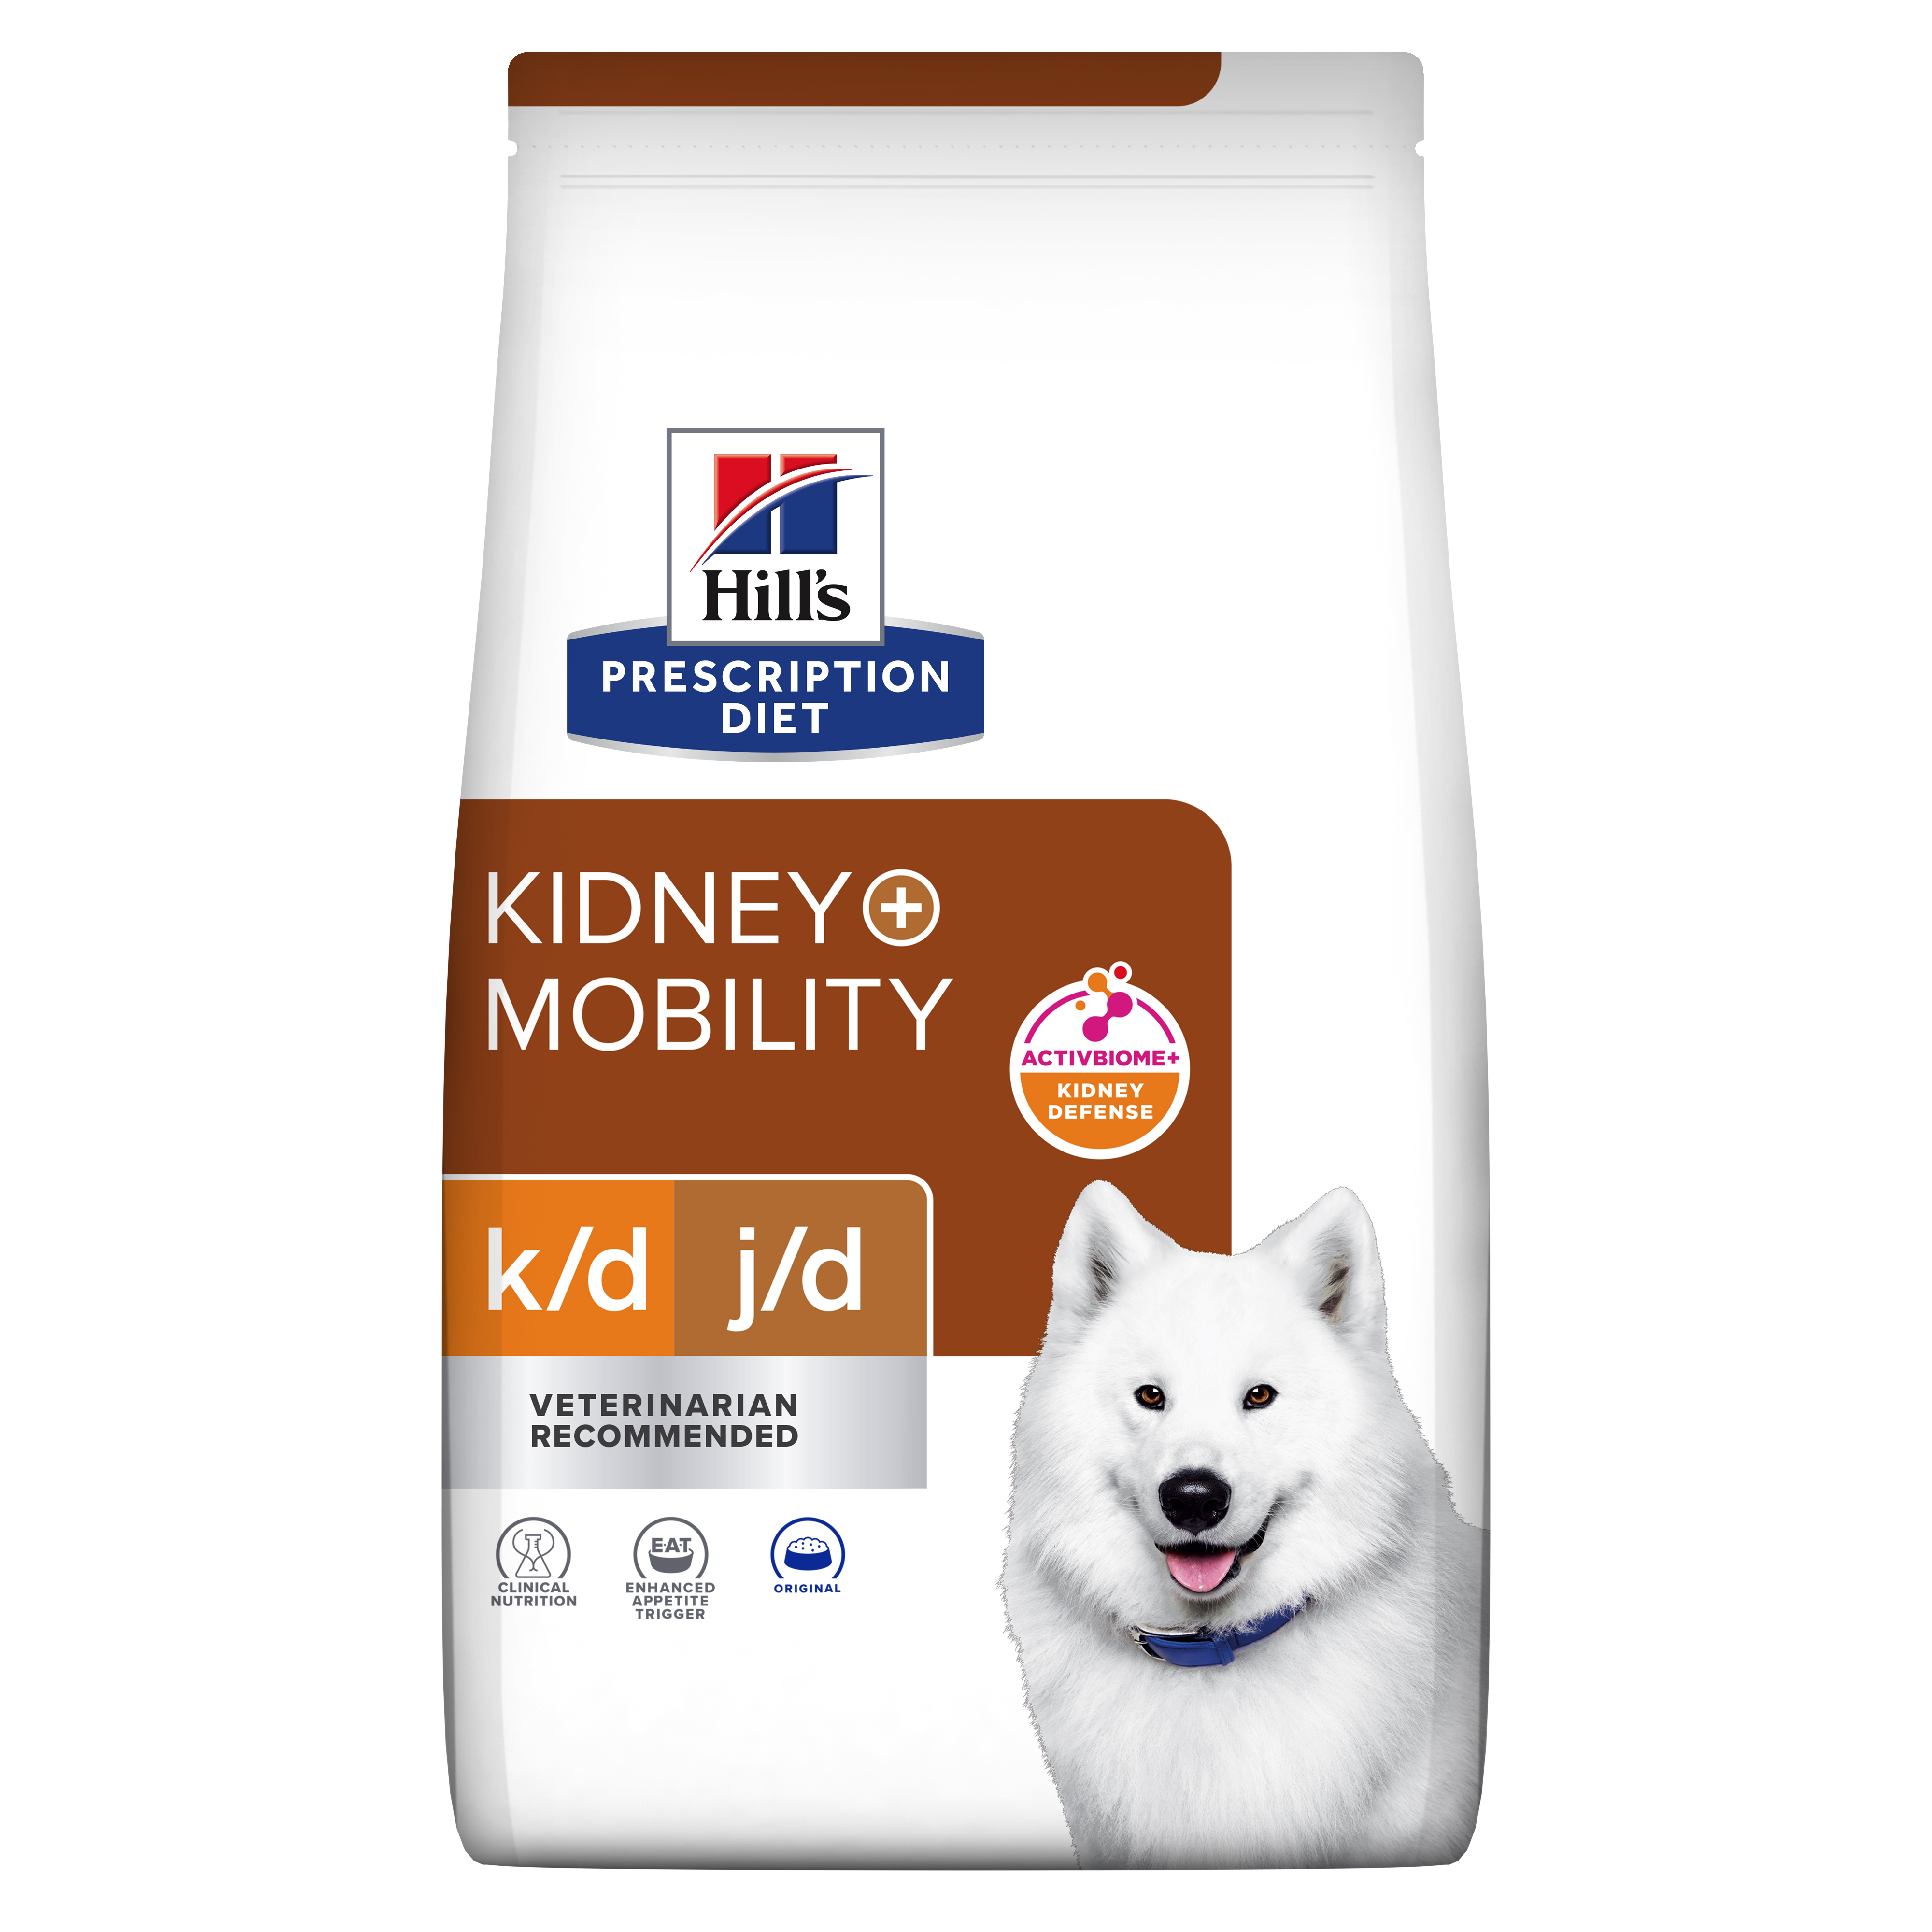 k/d j/d | Hill's Prescription Diet קידני + מוביליטי לכלב, 4 ק"ג